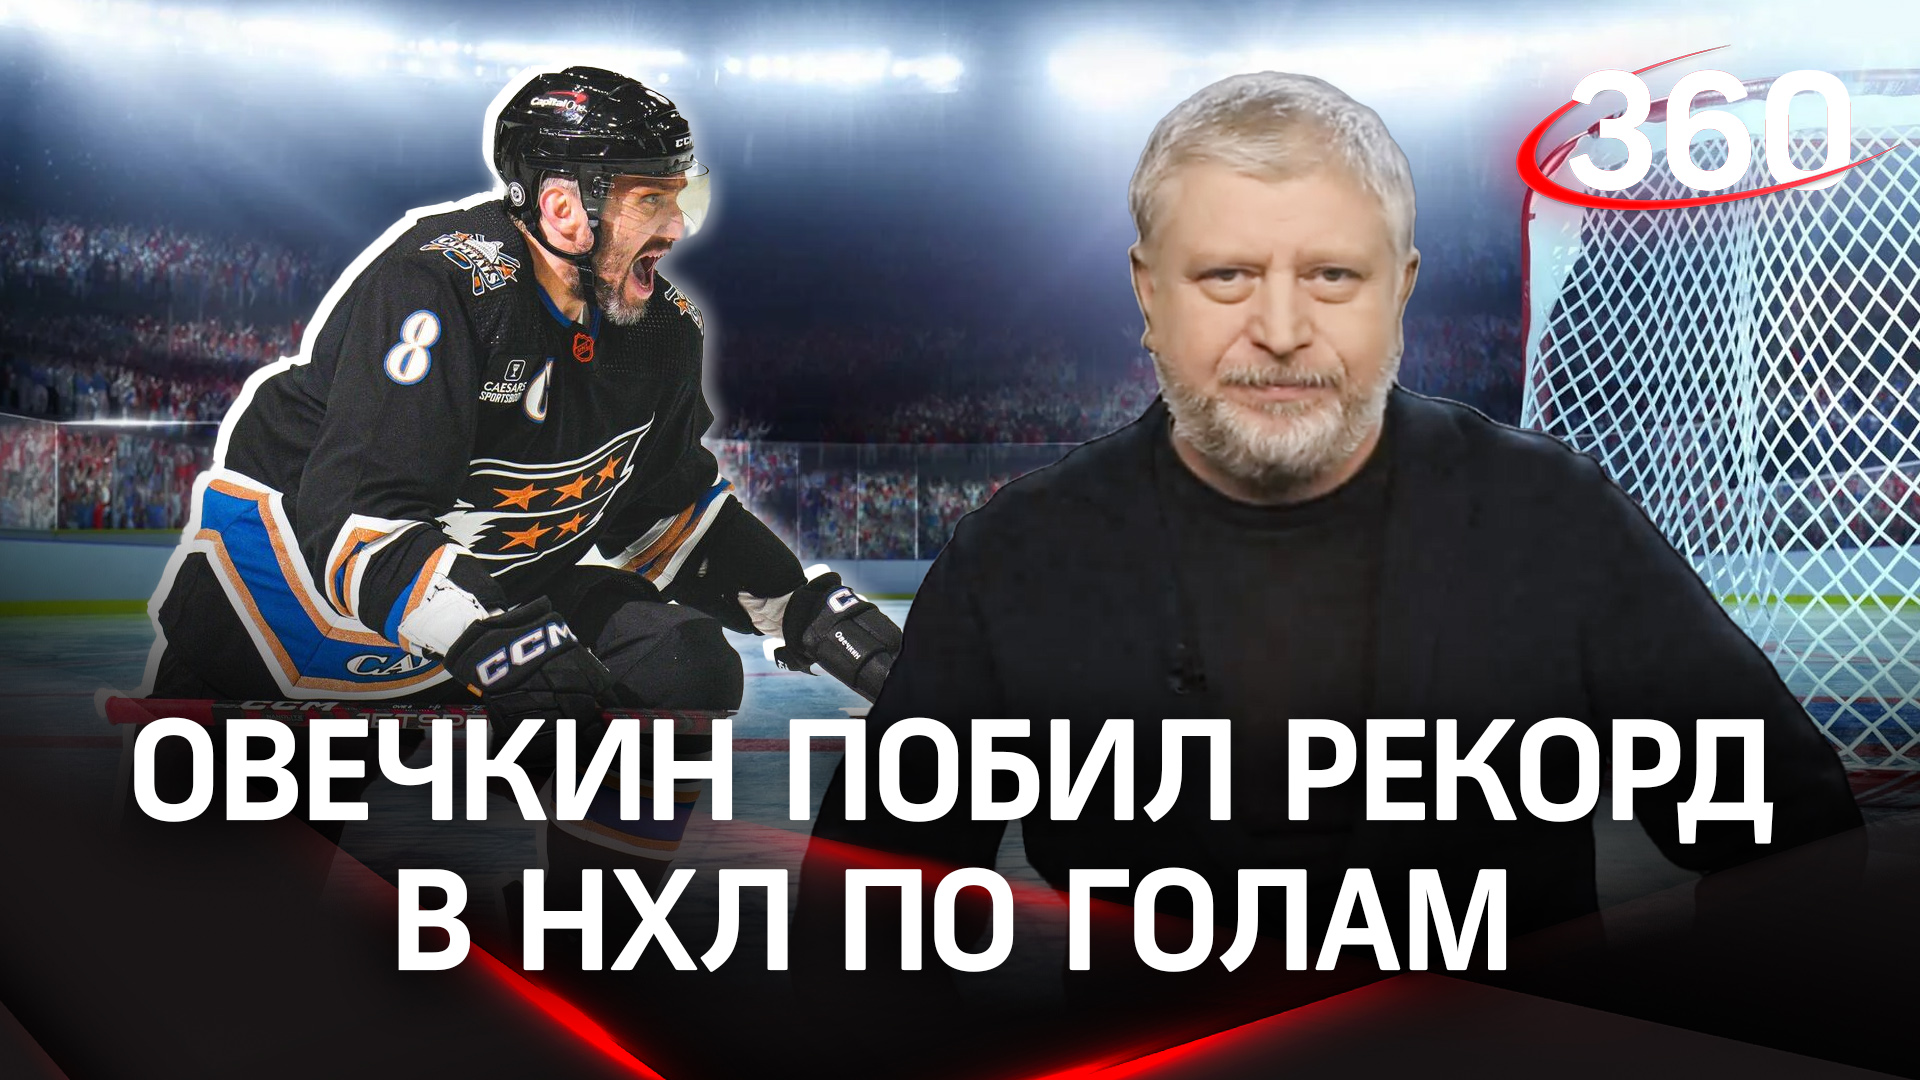 Александр Овечкин замахнулся на величайший рекорд НХЛ